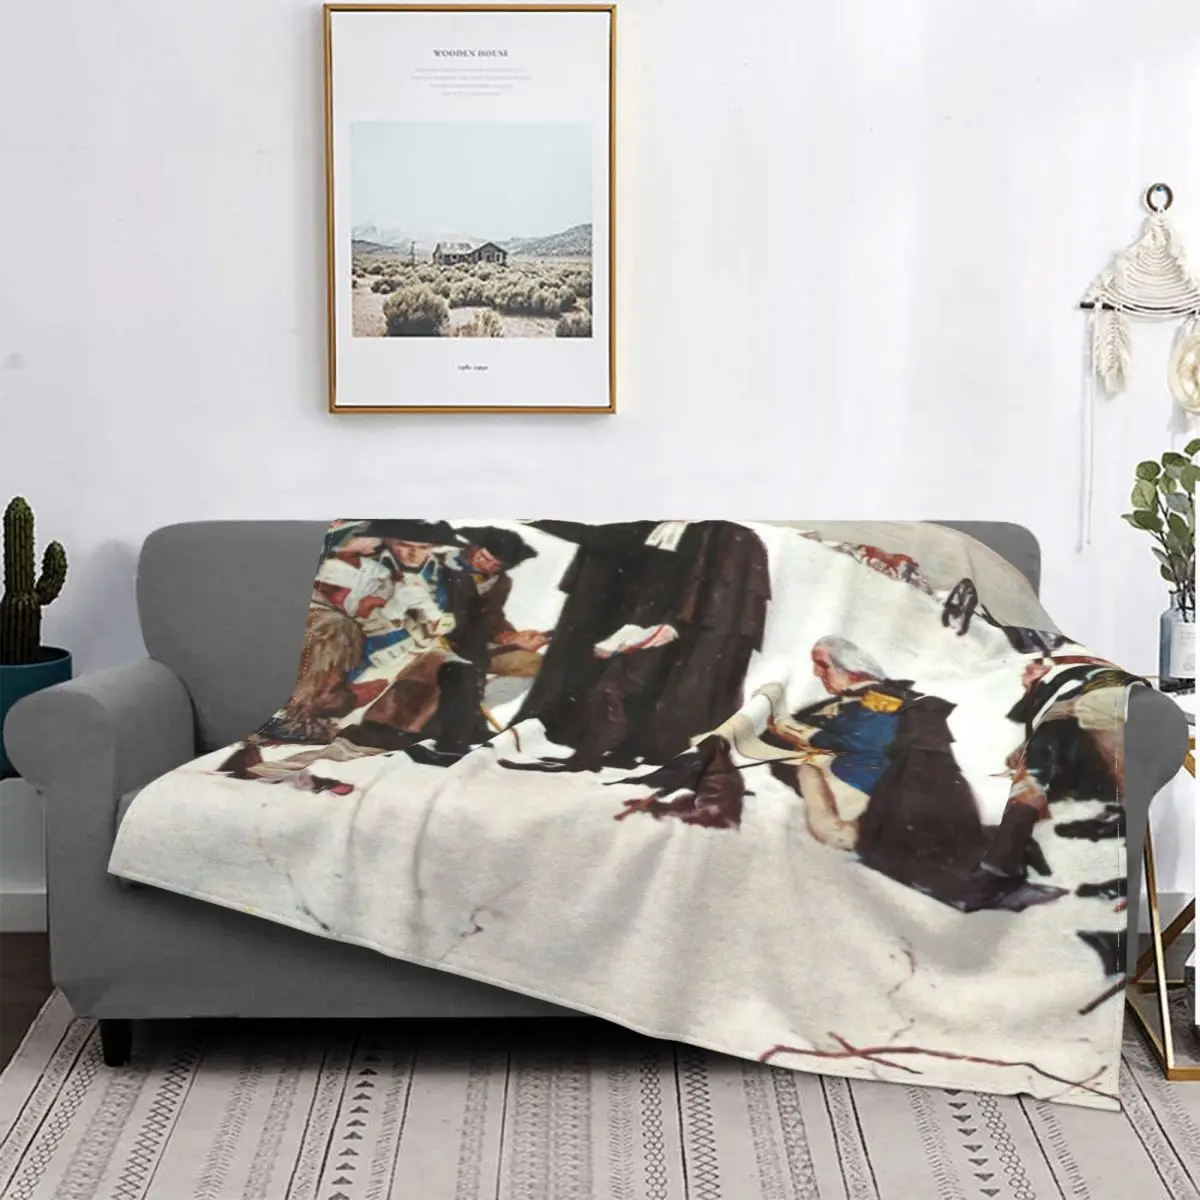 

Manta de forja de orada en el Валье, a cuadros para cama colcha, manta de playa, manta de пикник, textil de lujo para el доме